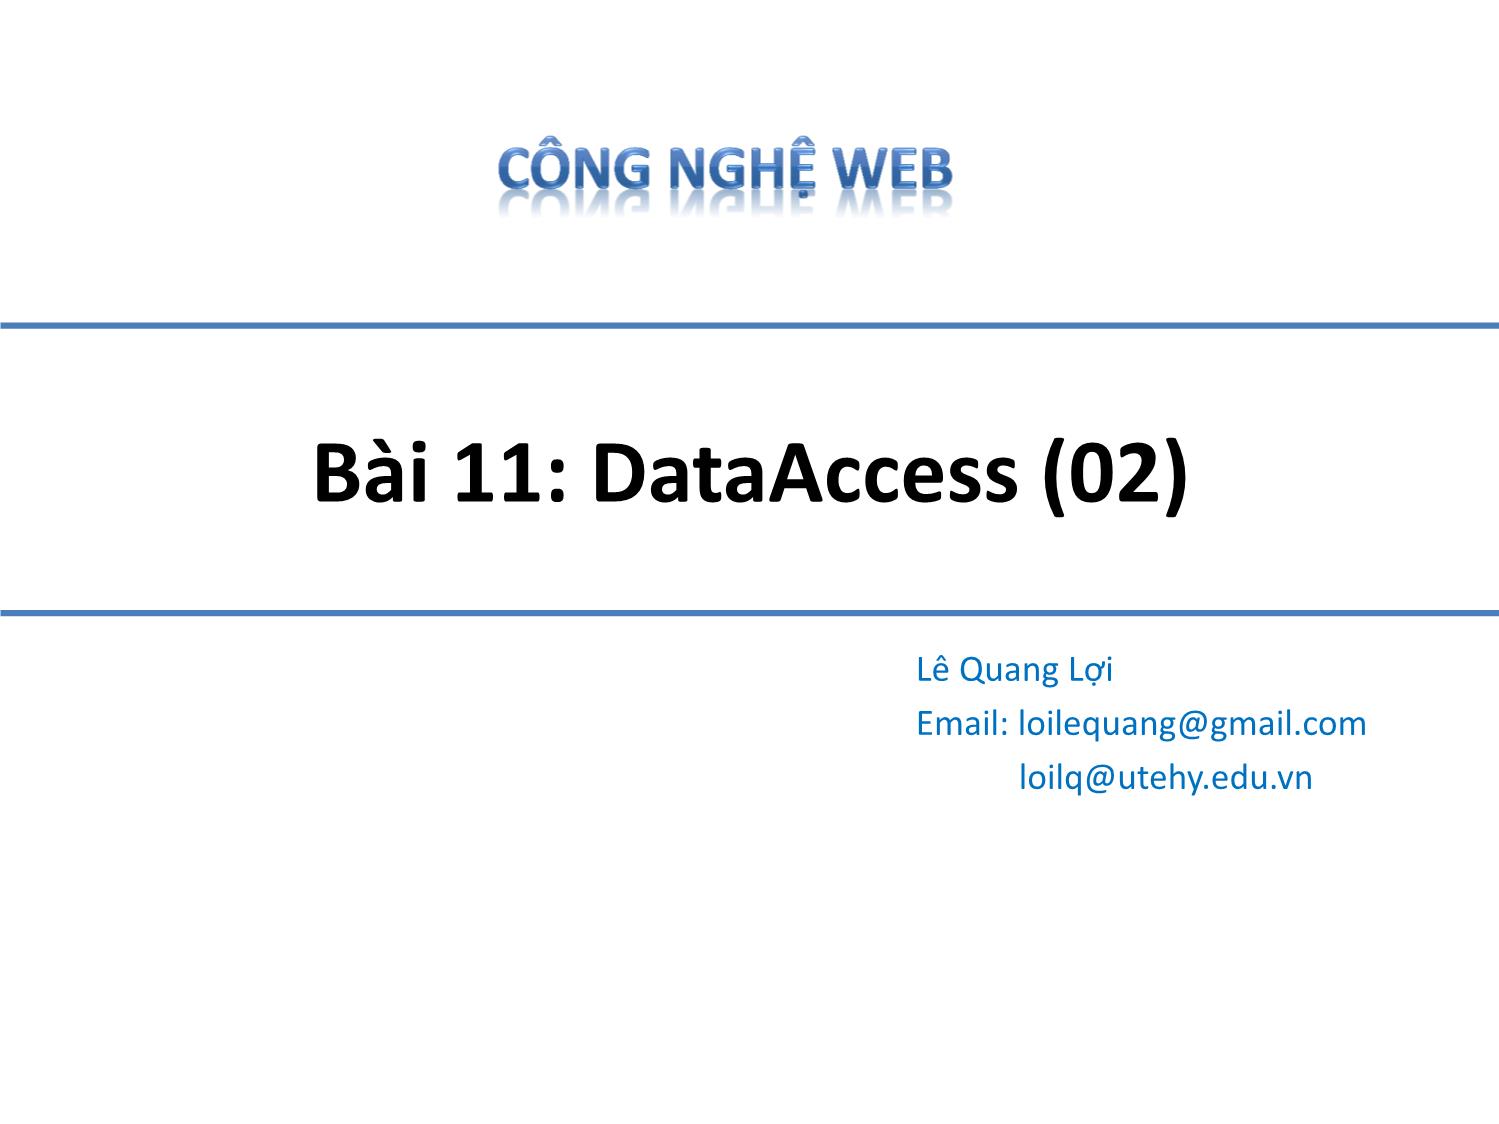 Bài giảng Công nghệ Web - Bài 11: Data Access - Lê Quang Lợi trang 1